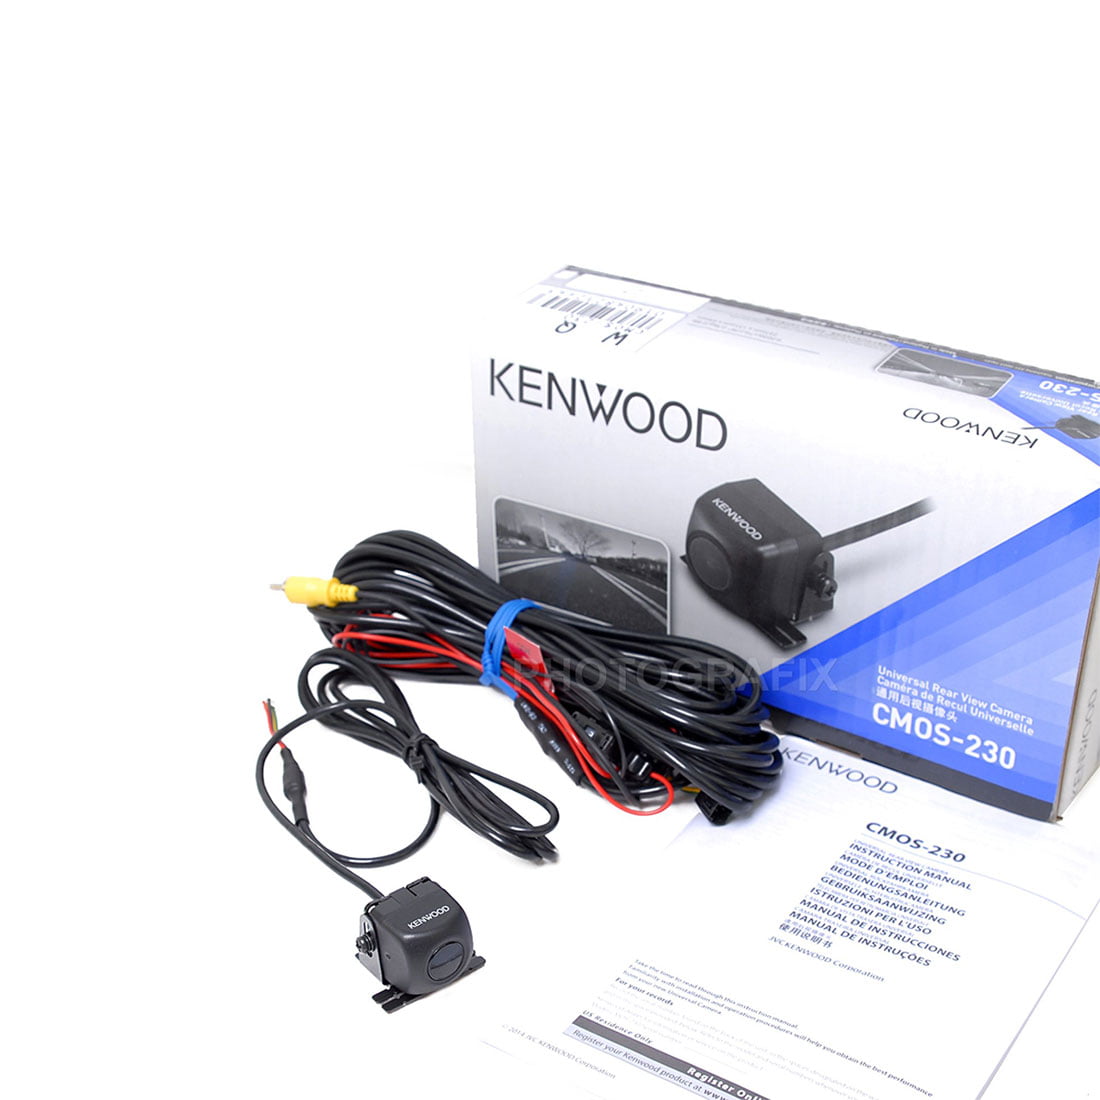 Kenwood CMOS-230 Universal Rear-View Camera